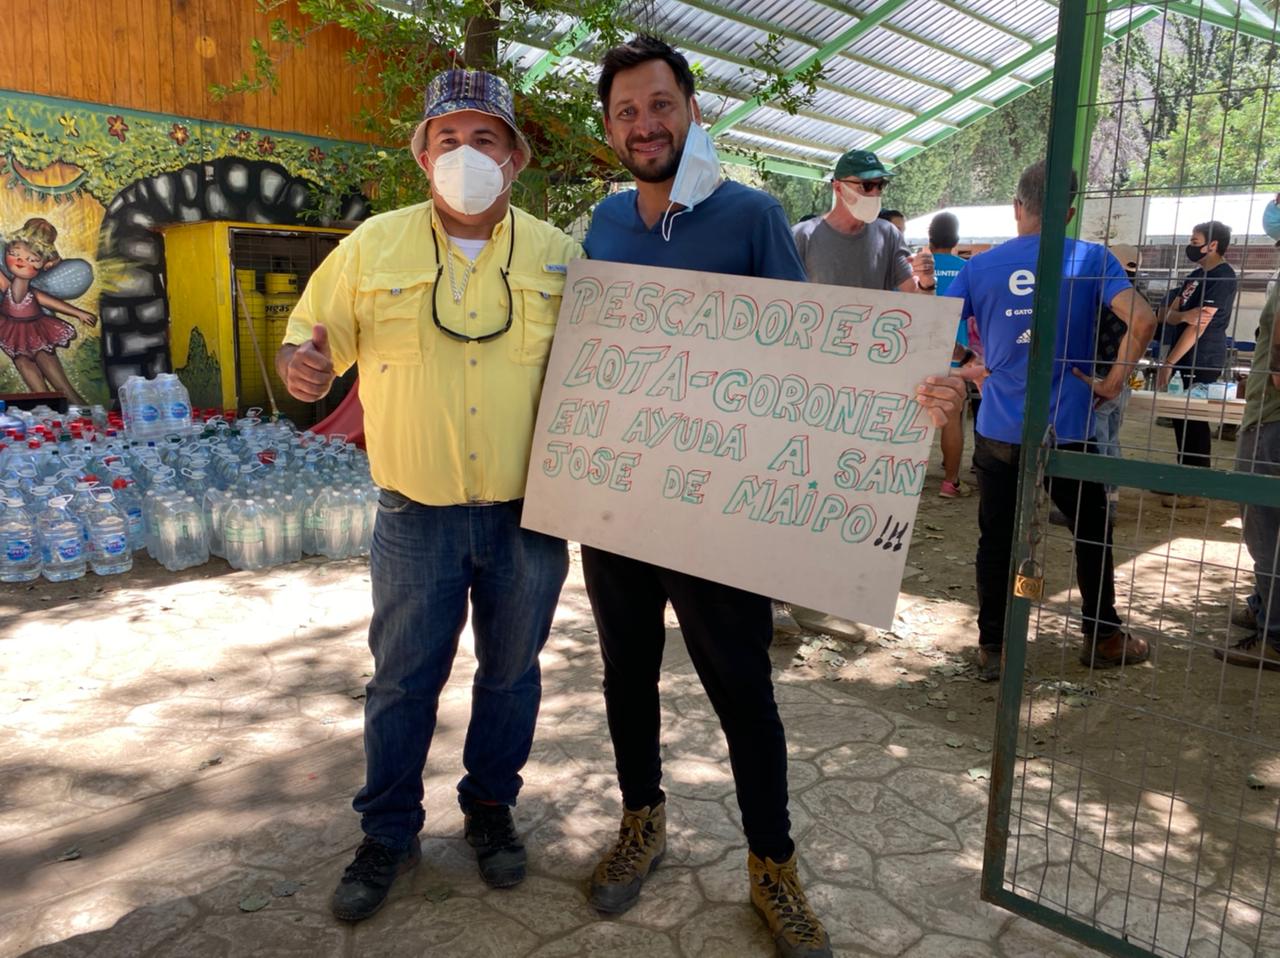 Hernan Cortes, “este jueves fue un día de amistad y solidaridad»: Pescadores artesanales regalan una tonelada de merluza a damnificados del Cajón del Maipo